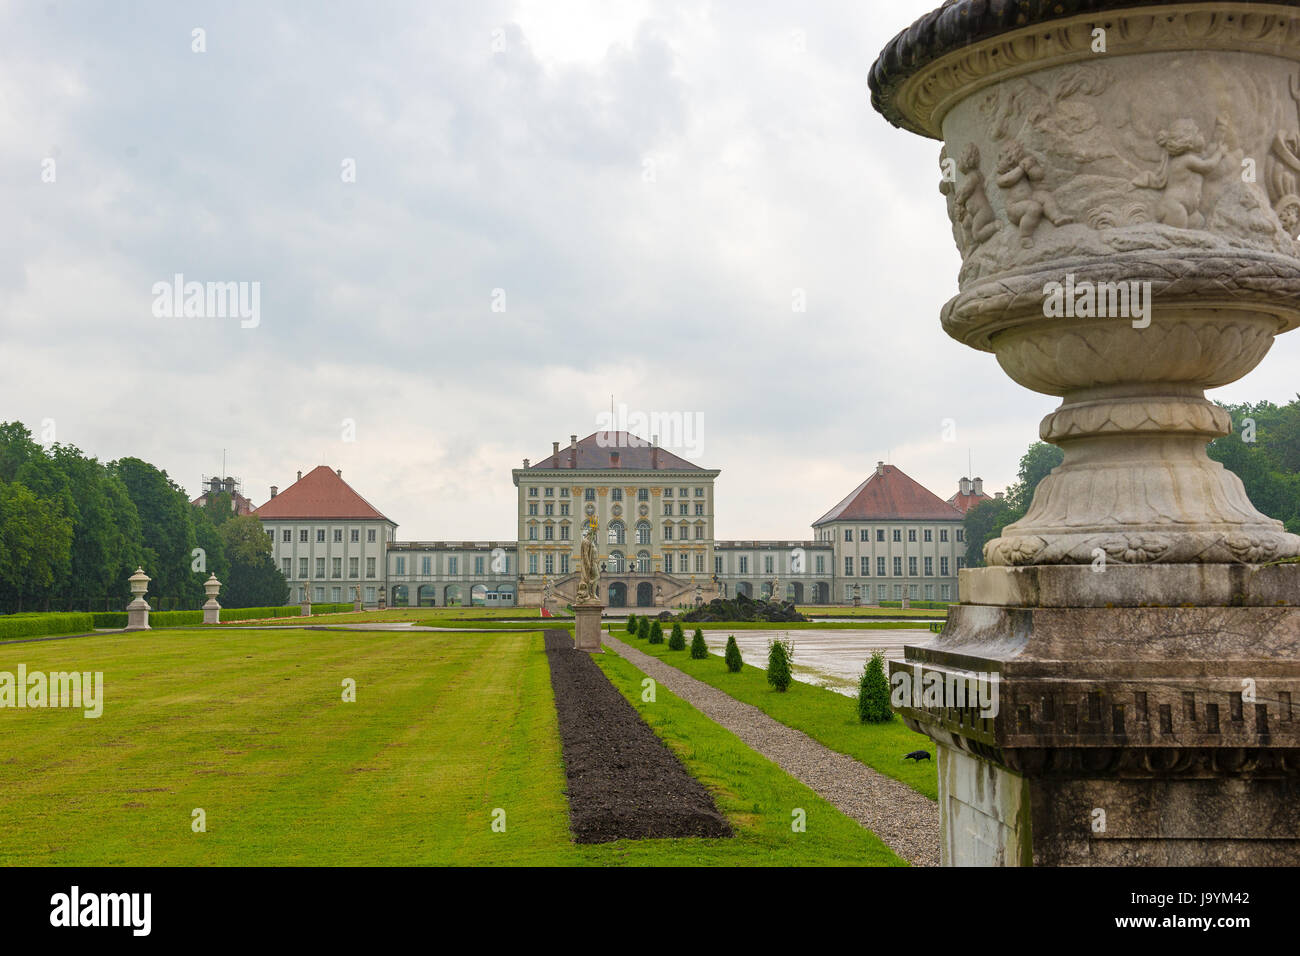 München, Deutschland - Juni 8. 2016: Schloss Nymphenburg, die Sommerresidenz der Bayerischen Könige, vom öffentlichen Park aus gesehen Stockfoto